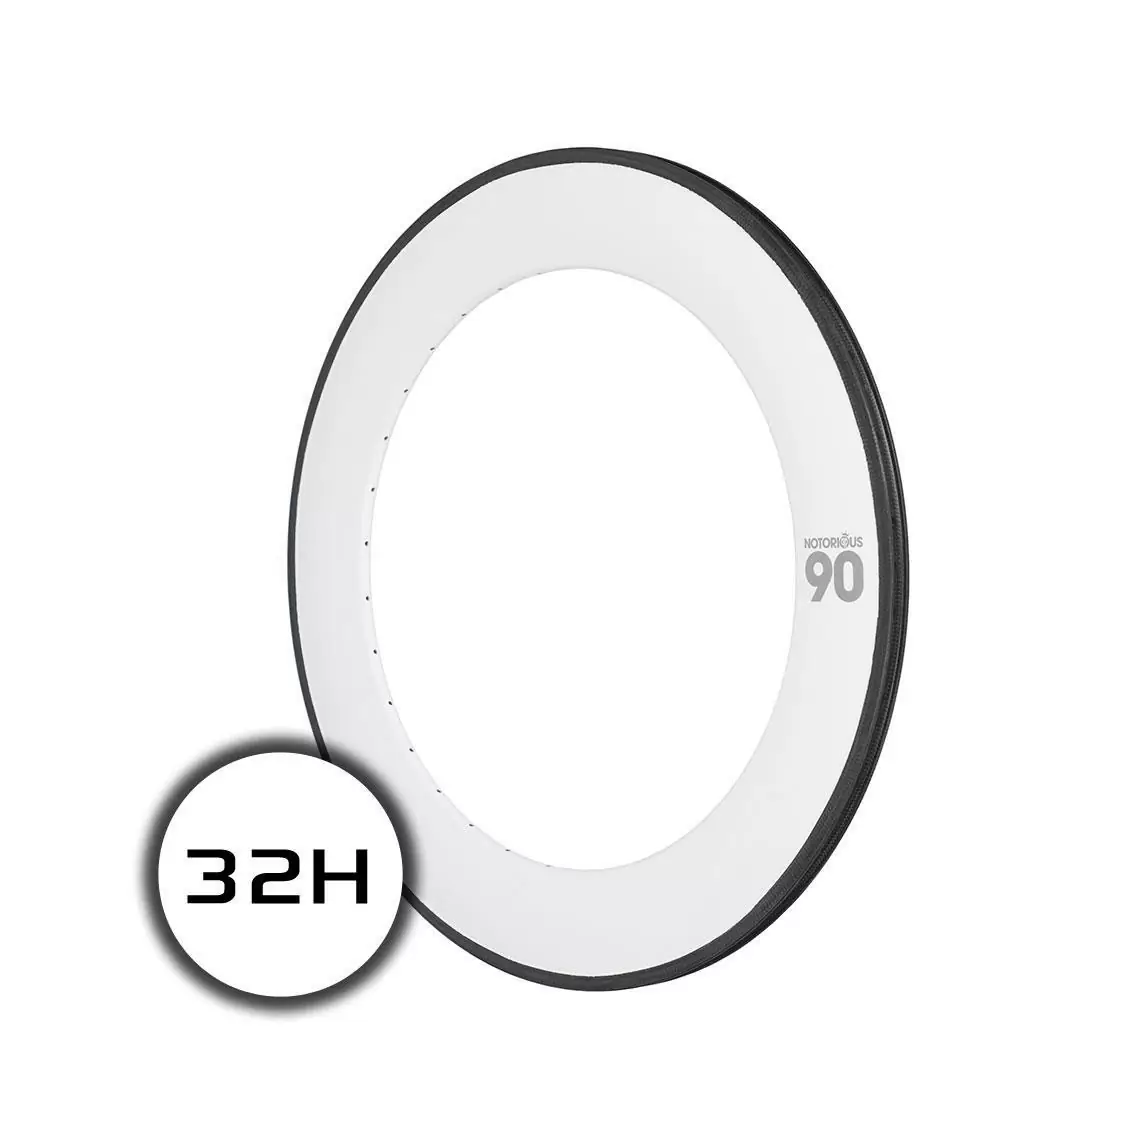 cerchio notorious 90 700c carbon 32h msw bianco - image